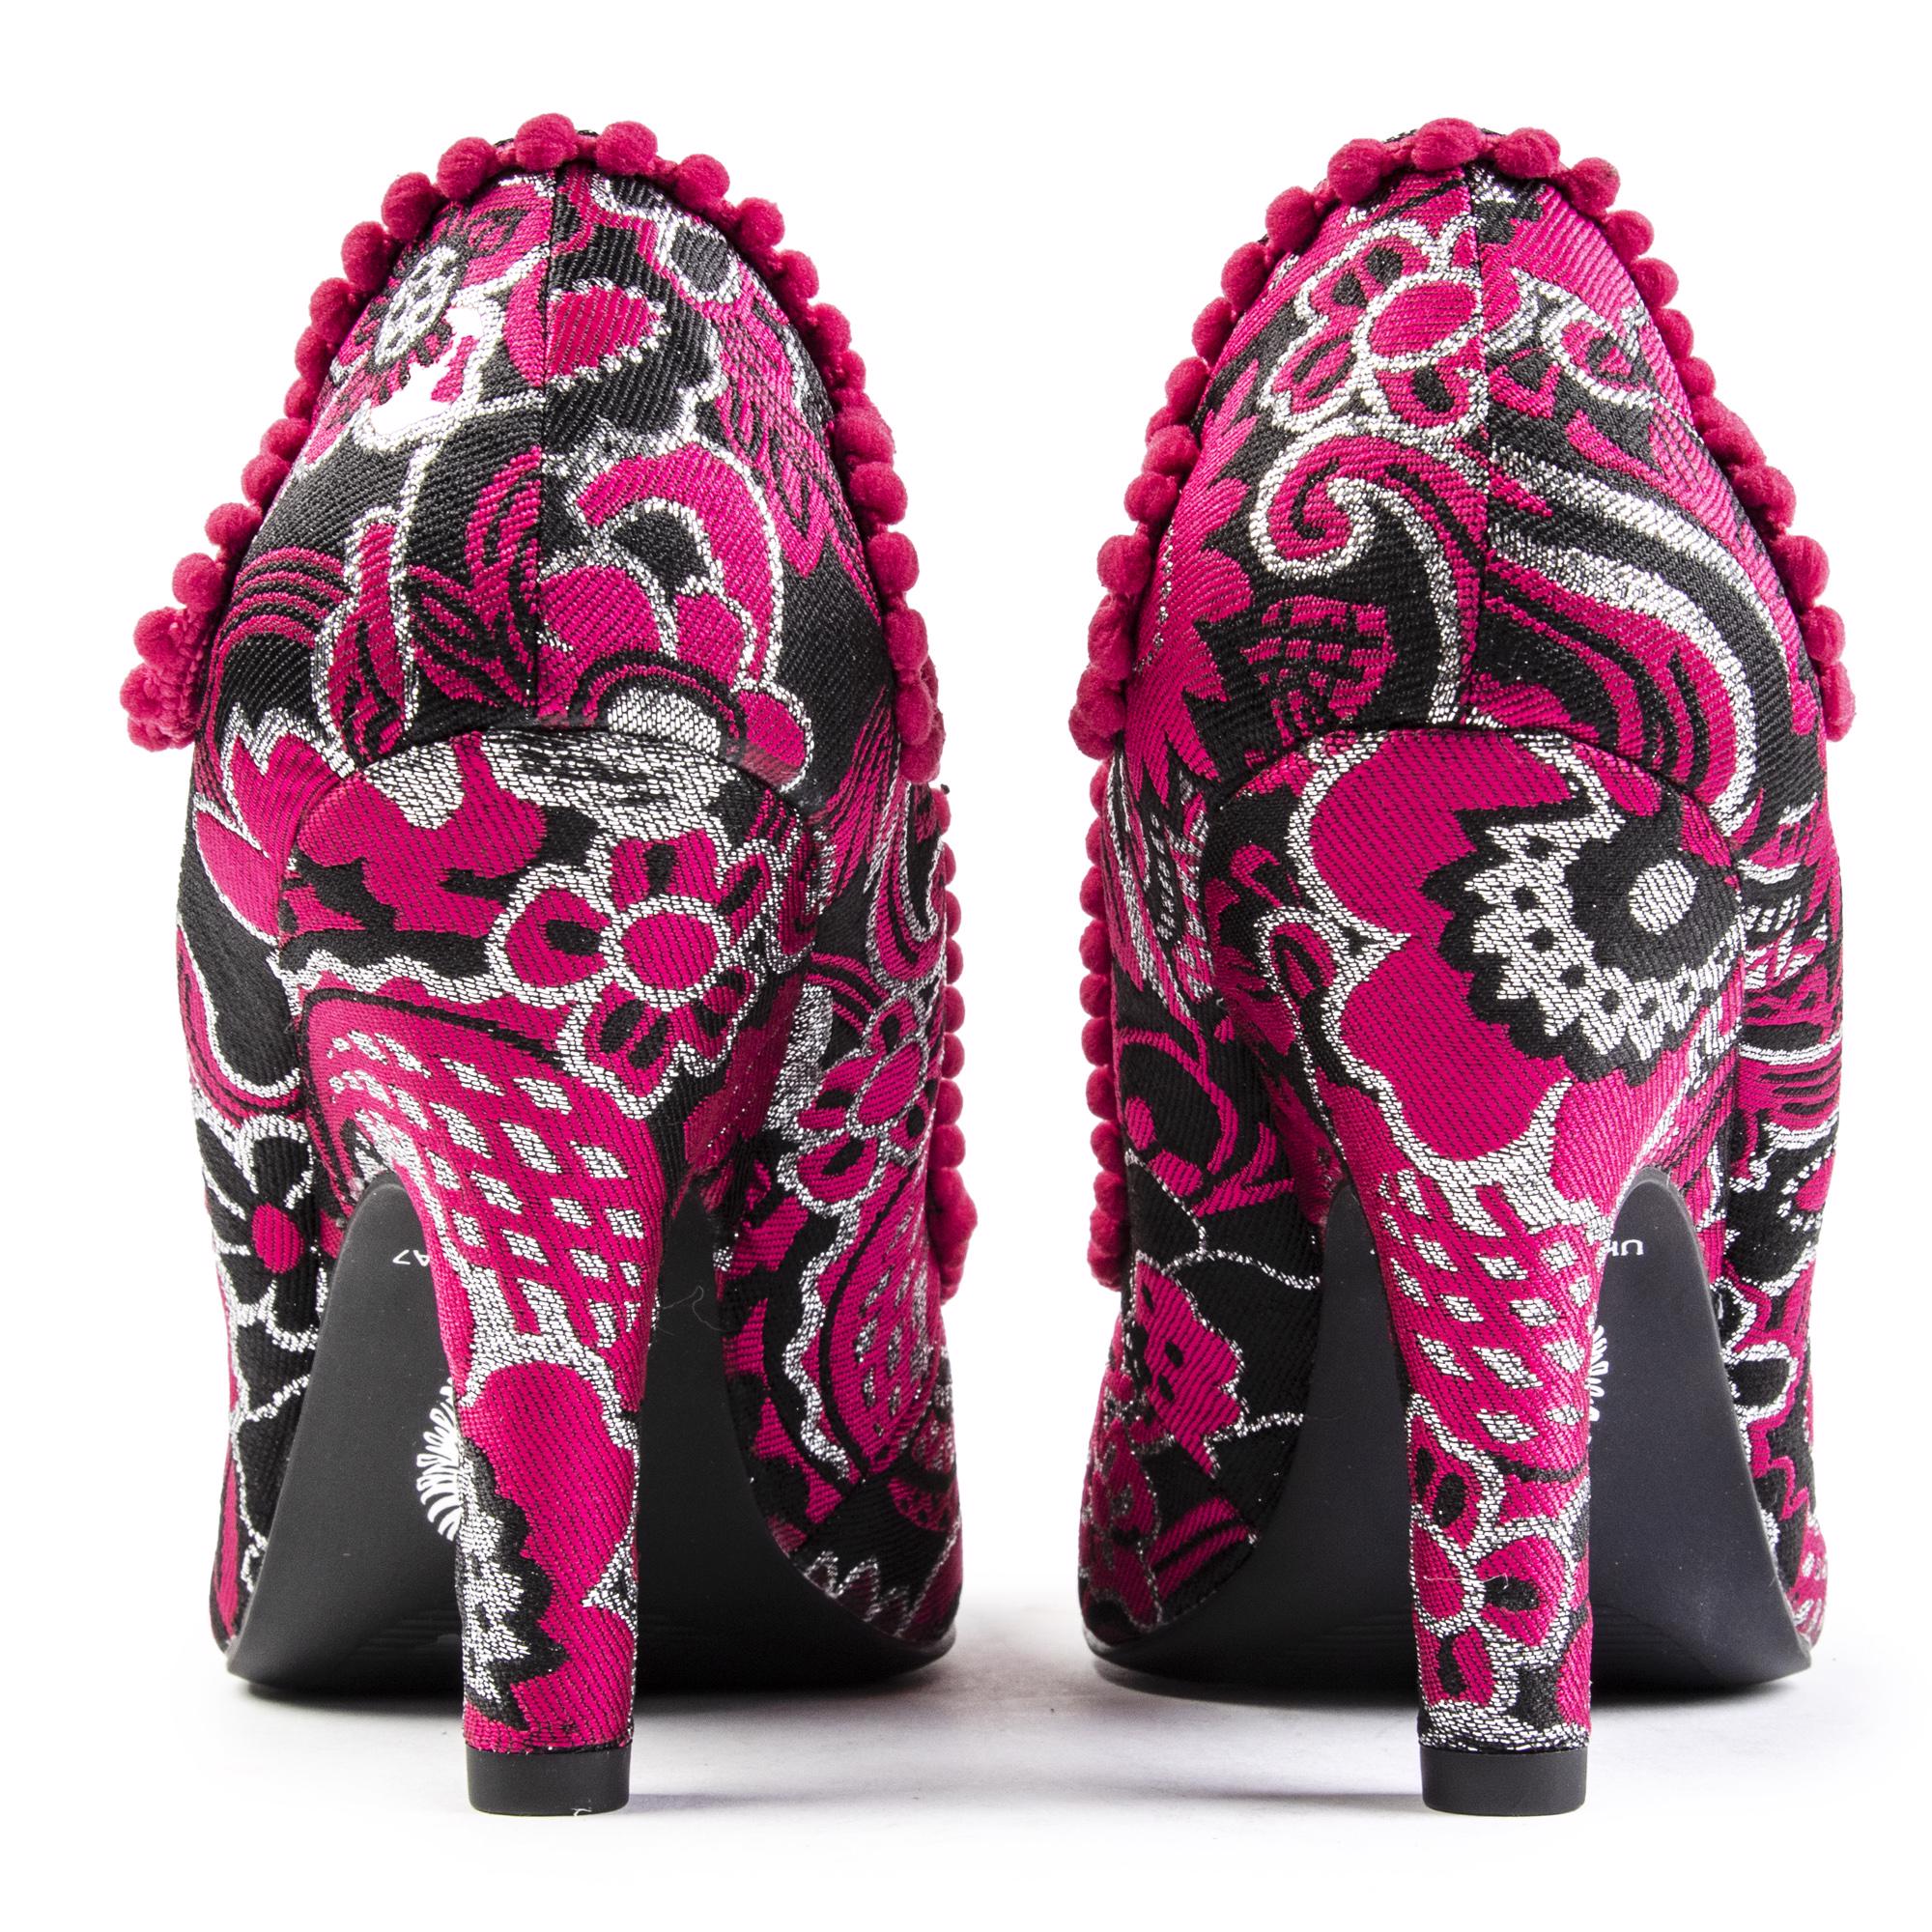 RUBY SHOO Womens Miley Heels Shoes Pink